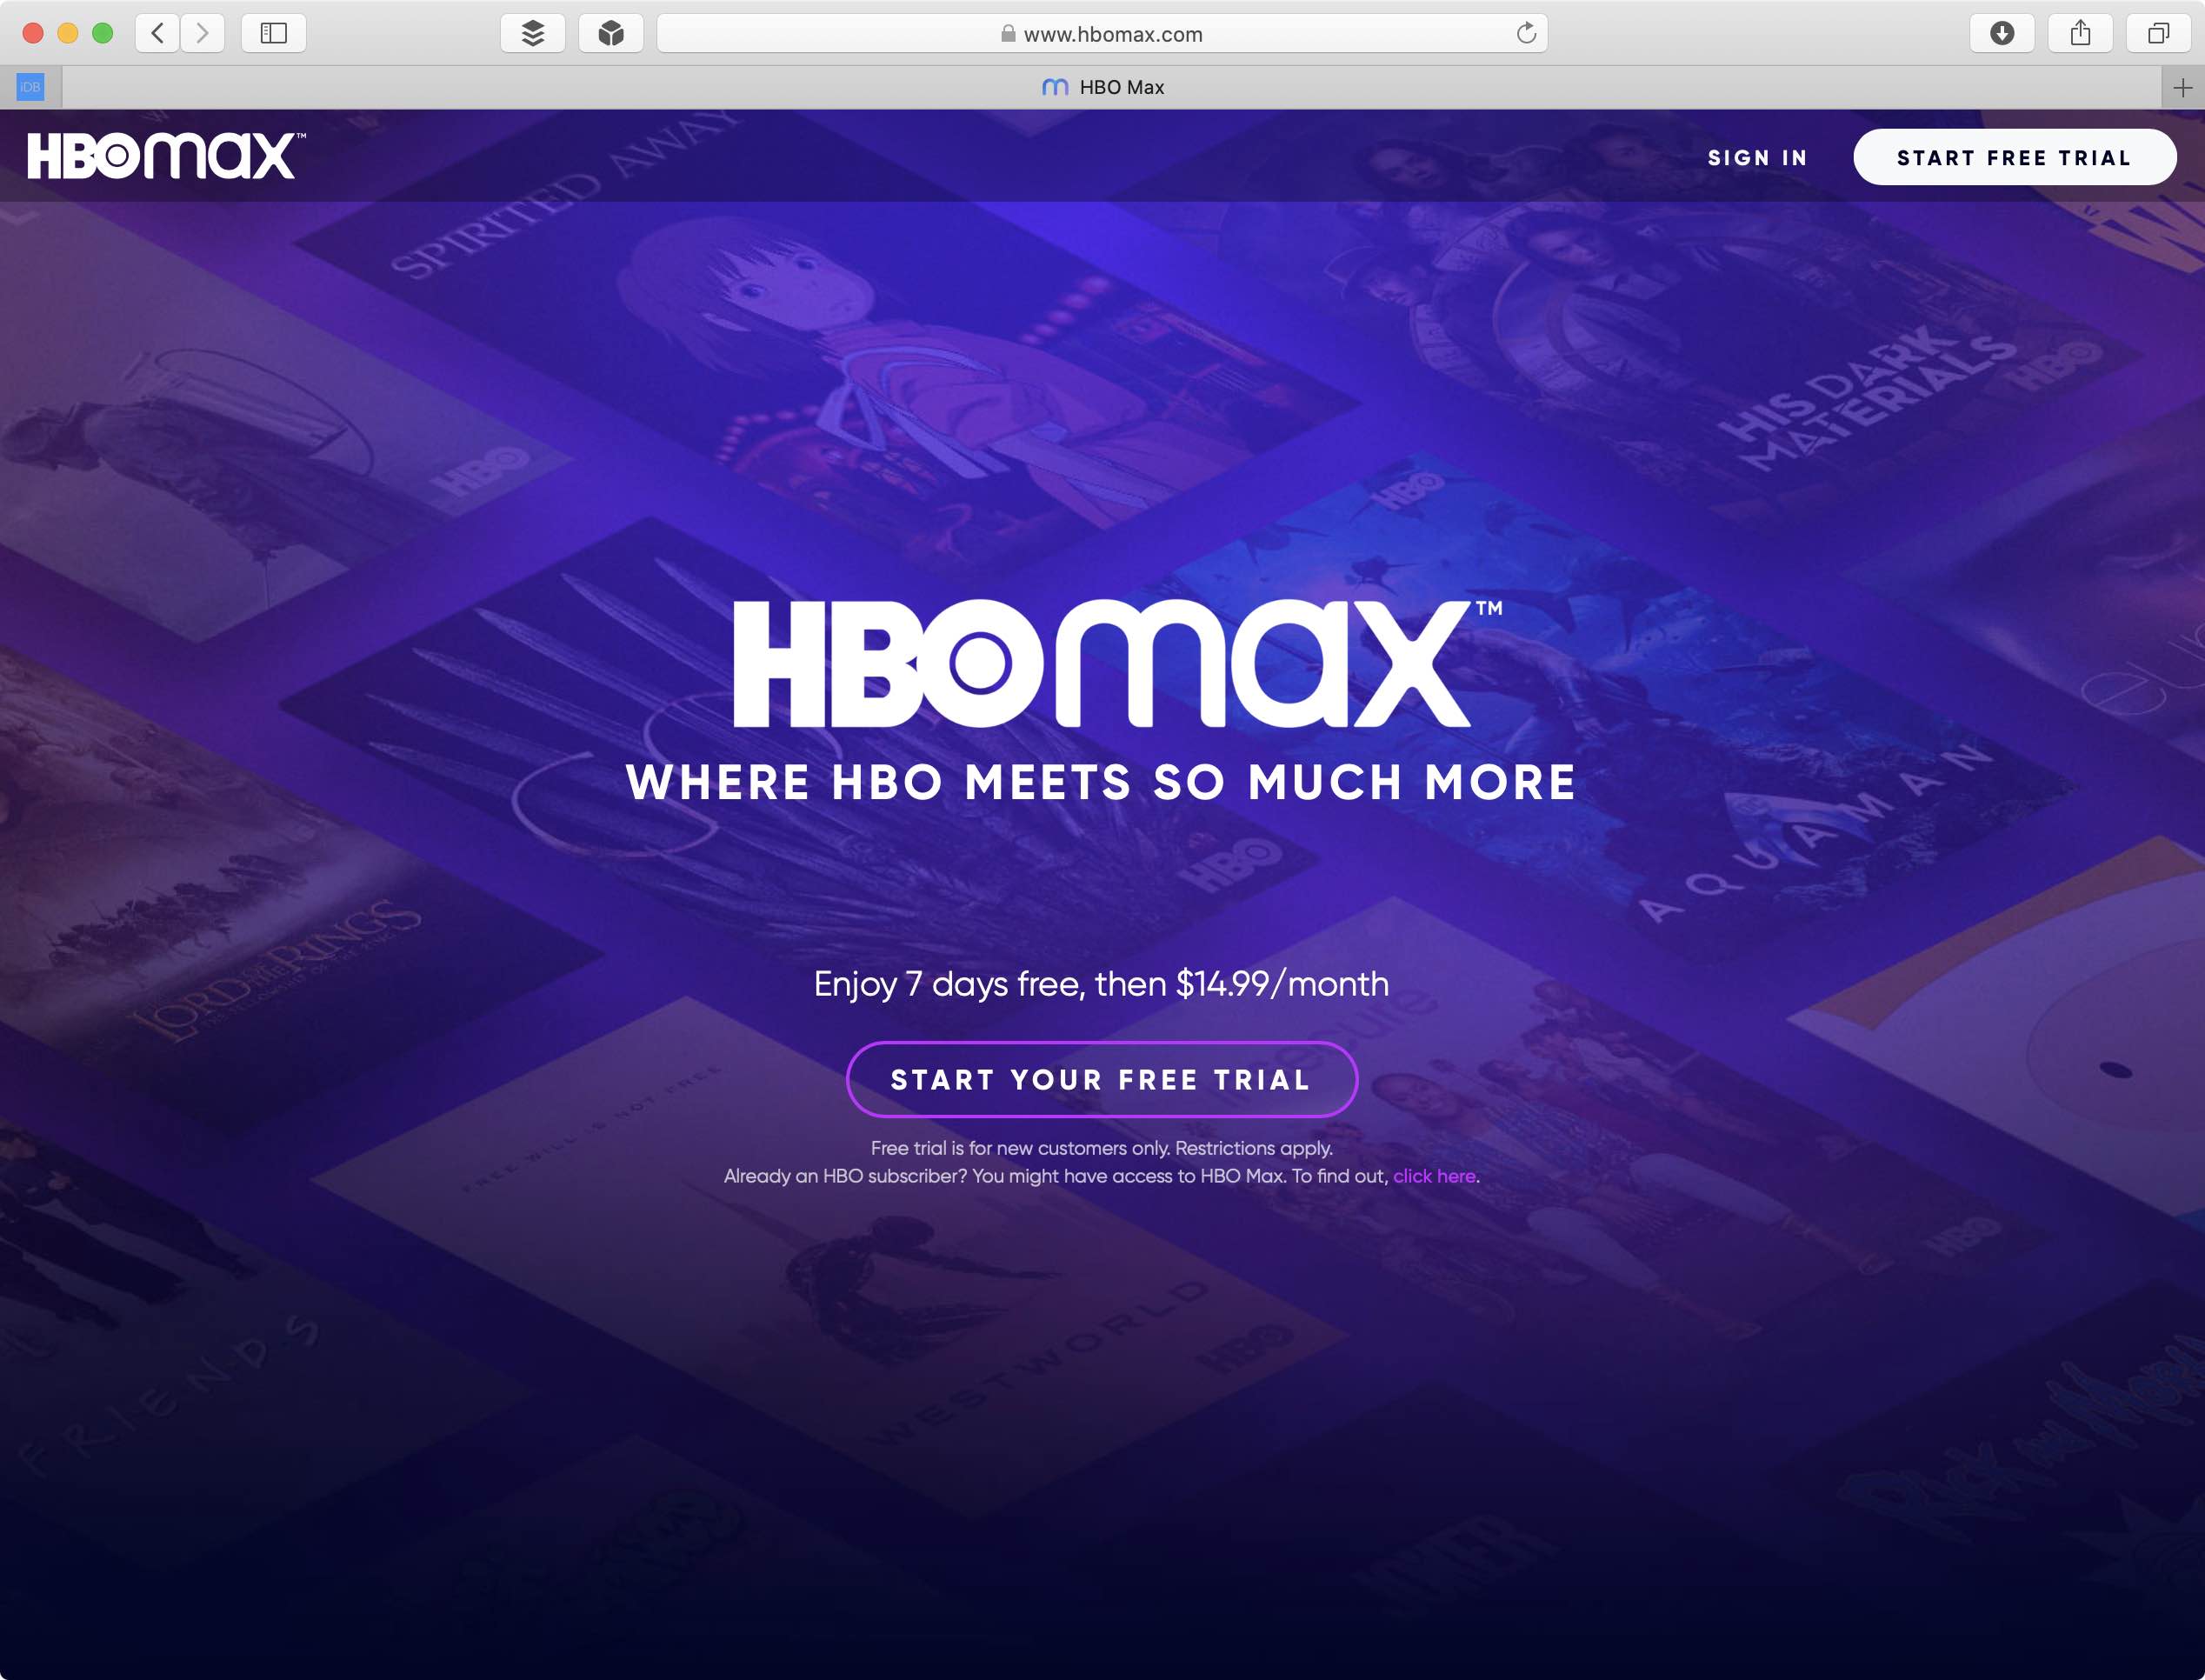 hbo max app mac